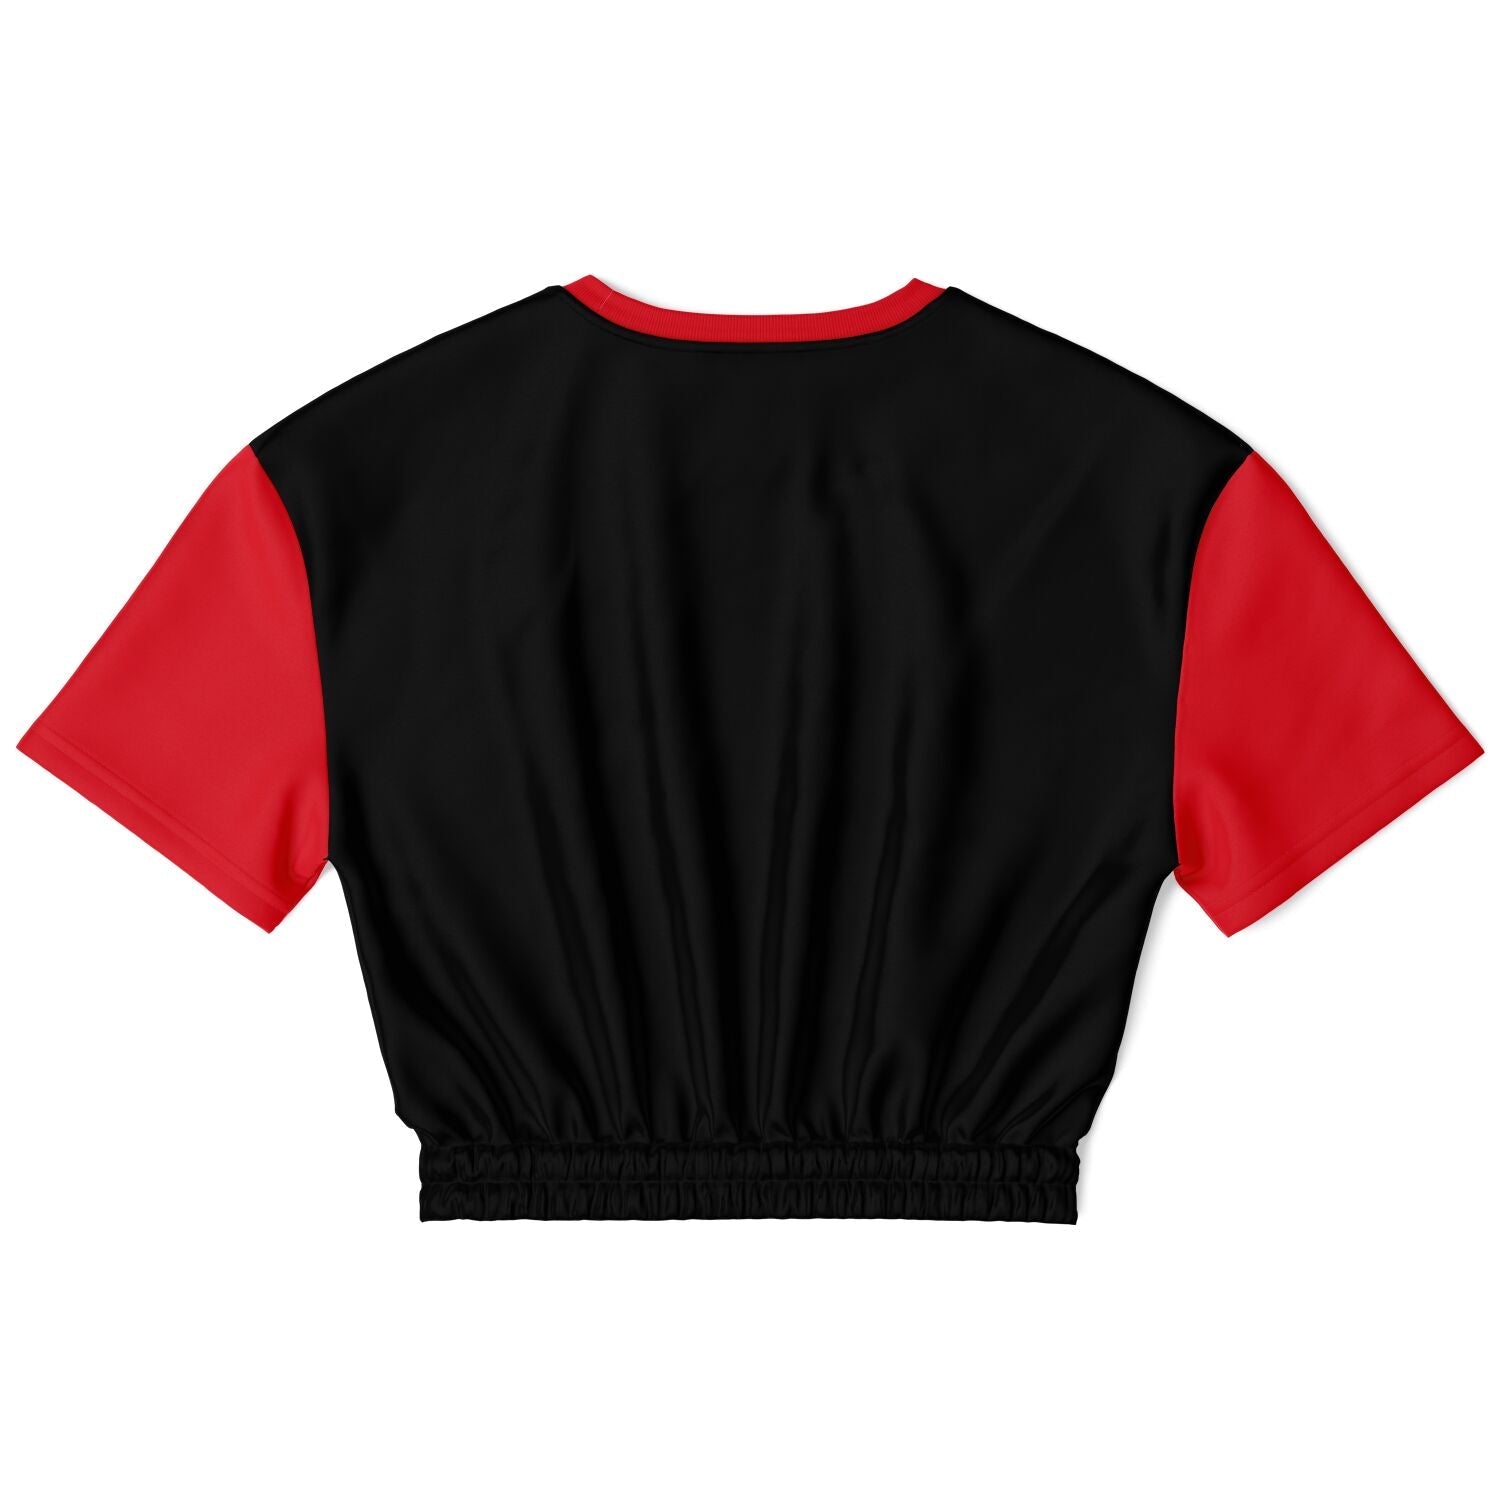 Aries G-Mode Crop Shirt